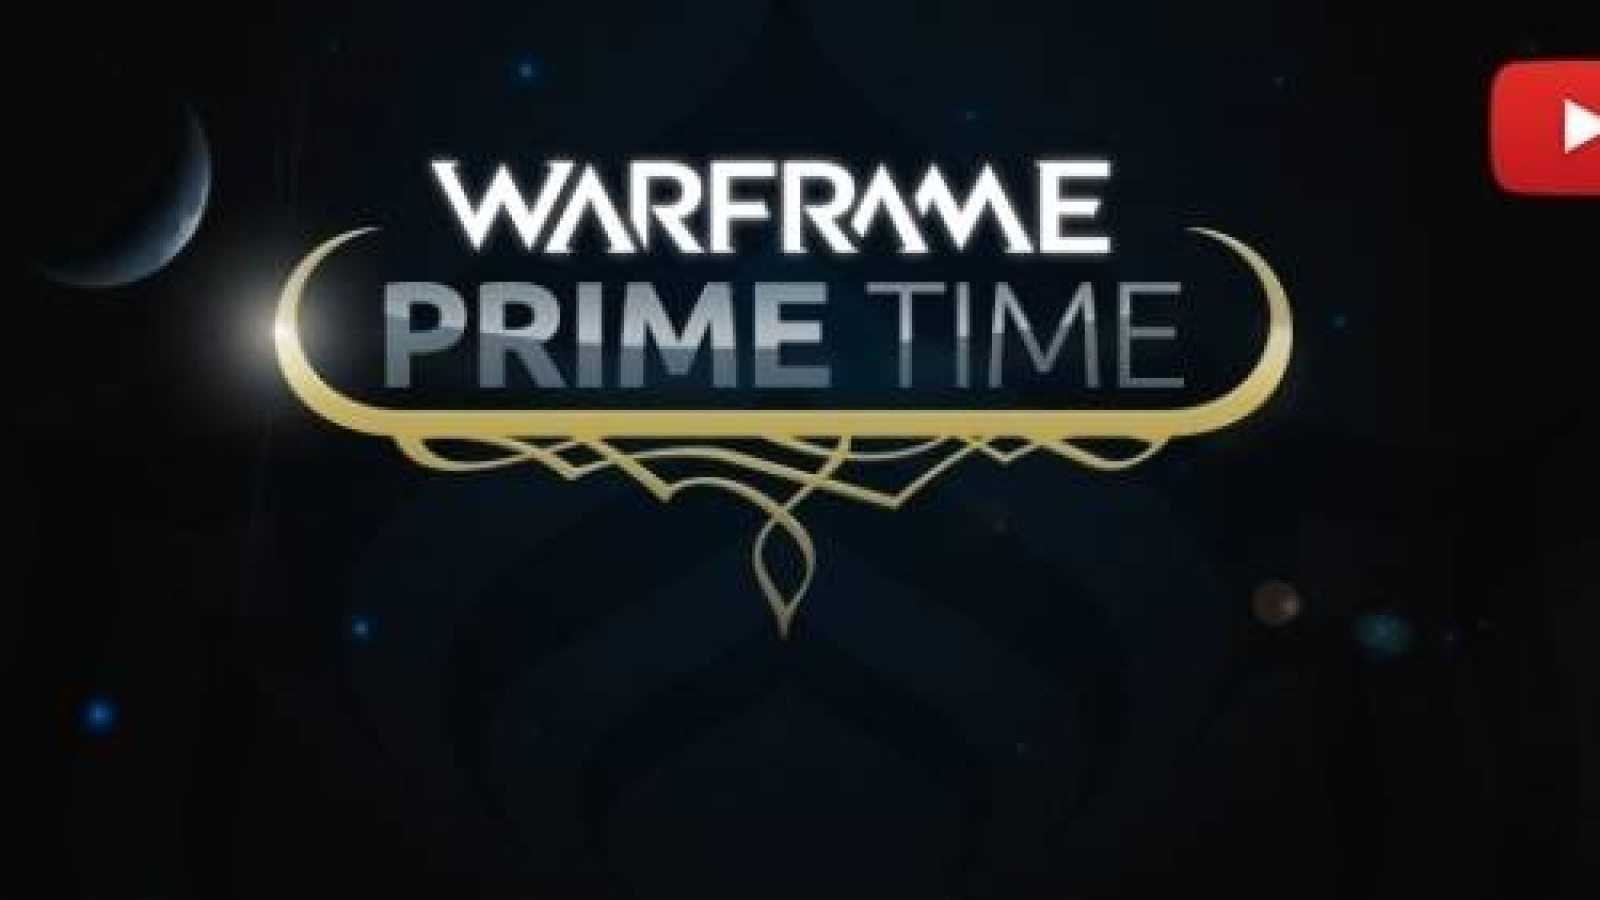 WARFRAME PRIME TIME